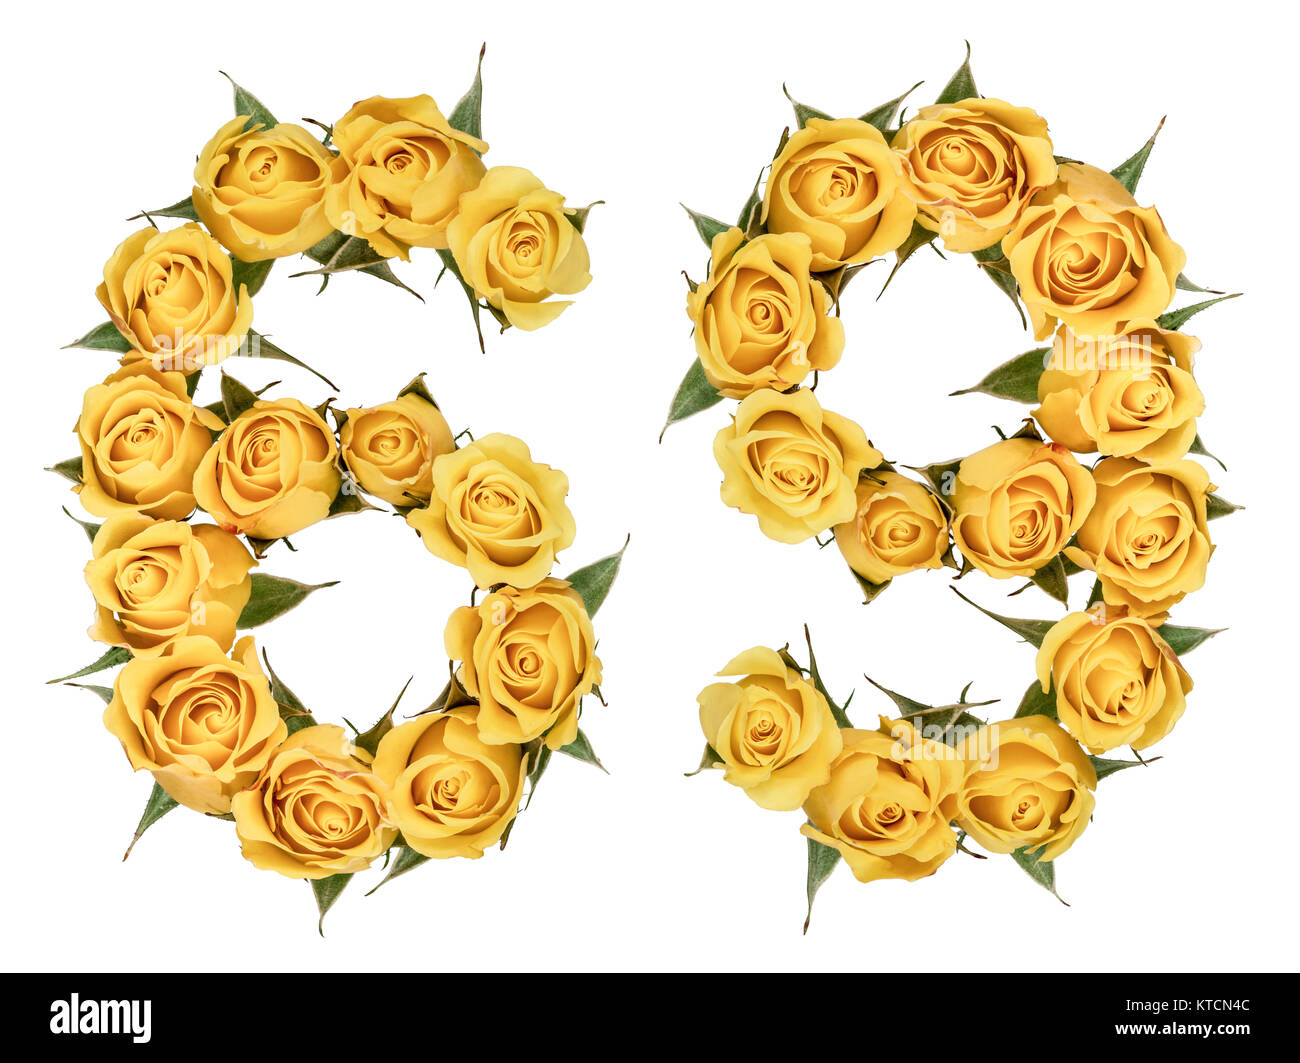 Número arábigo 69, sesenta y nueve, de flores amarillas de rose, aislado sobre fondo blanco. Foto de stock